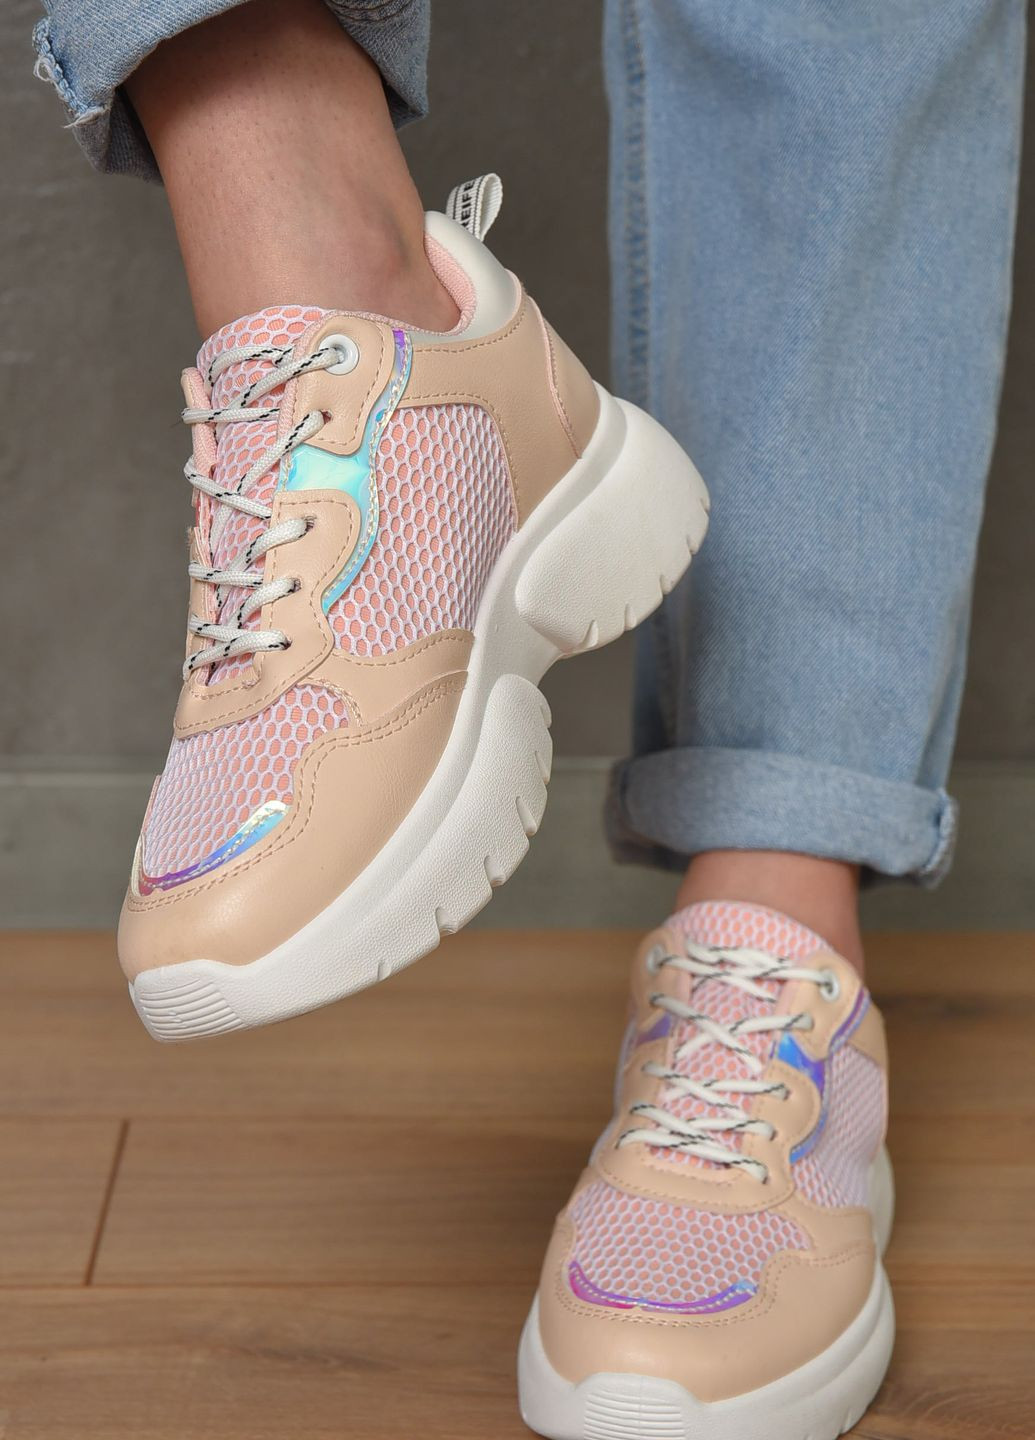 Пудрові осінні кросівки жіночі пудрового кольору на шнурівці Let's Shop